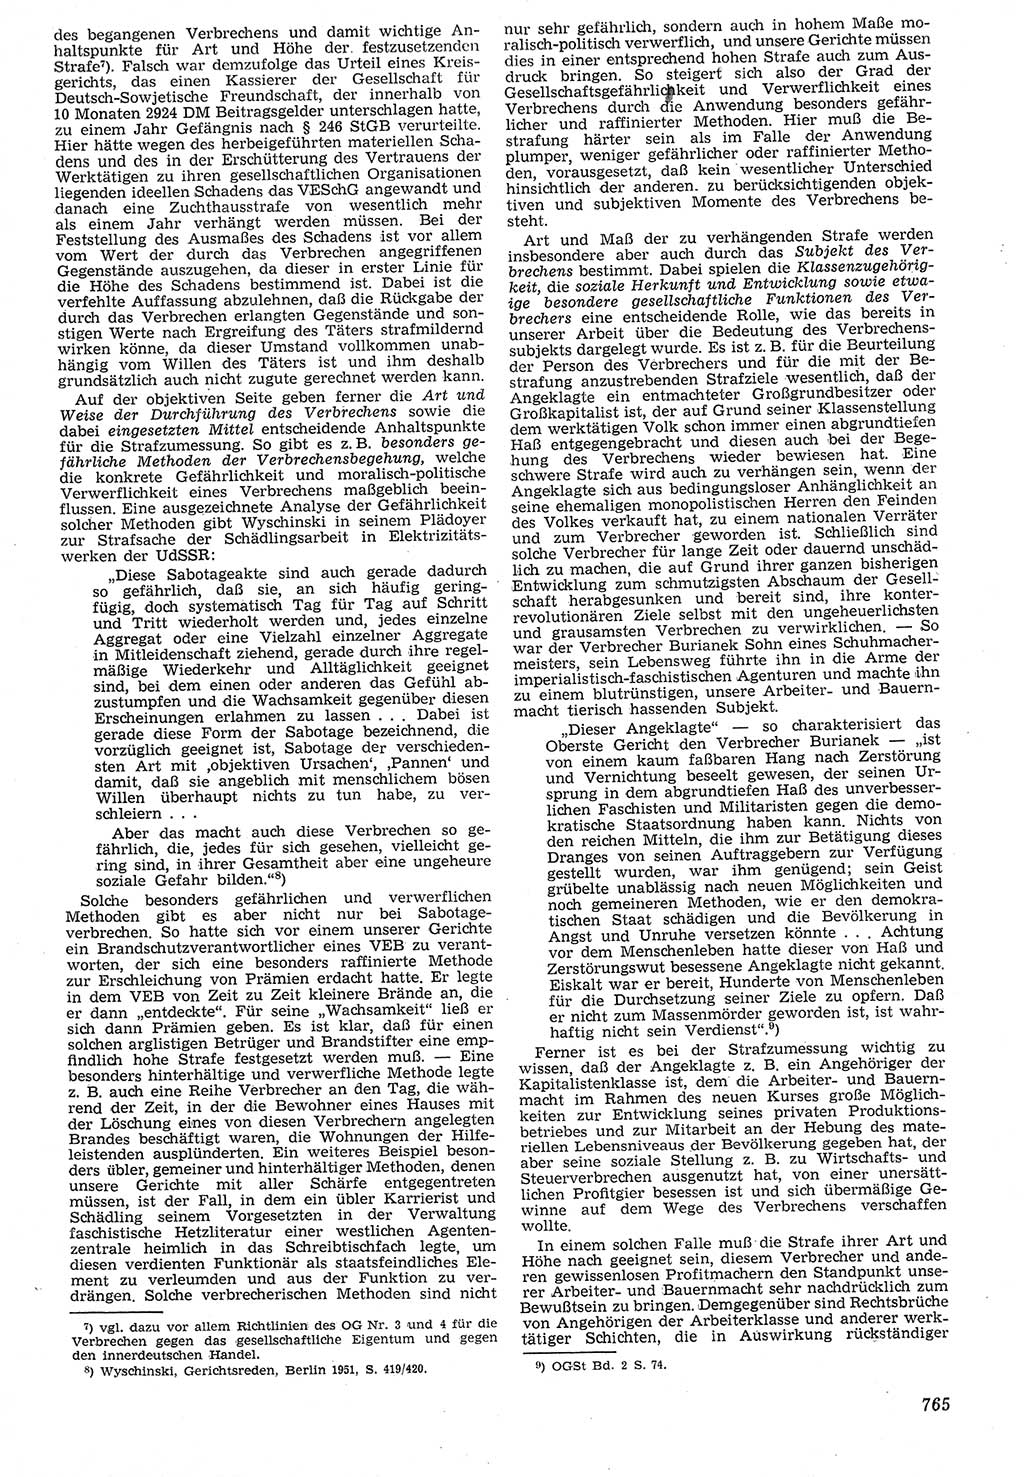 Neue Justiz (NJ), Zeitschrift für Recht und Rechtswissenschaft [Deutsche Demokratische Republik (DDR)], 7. Jahrgang 1953, Seite 765 (NJ DDR 1953, S. 765)